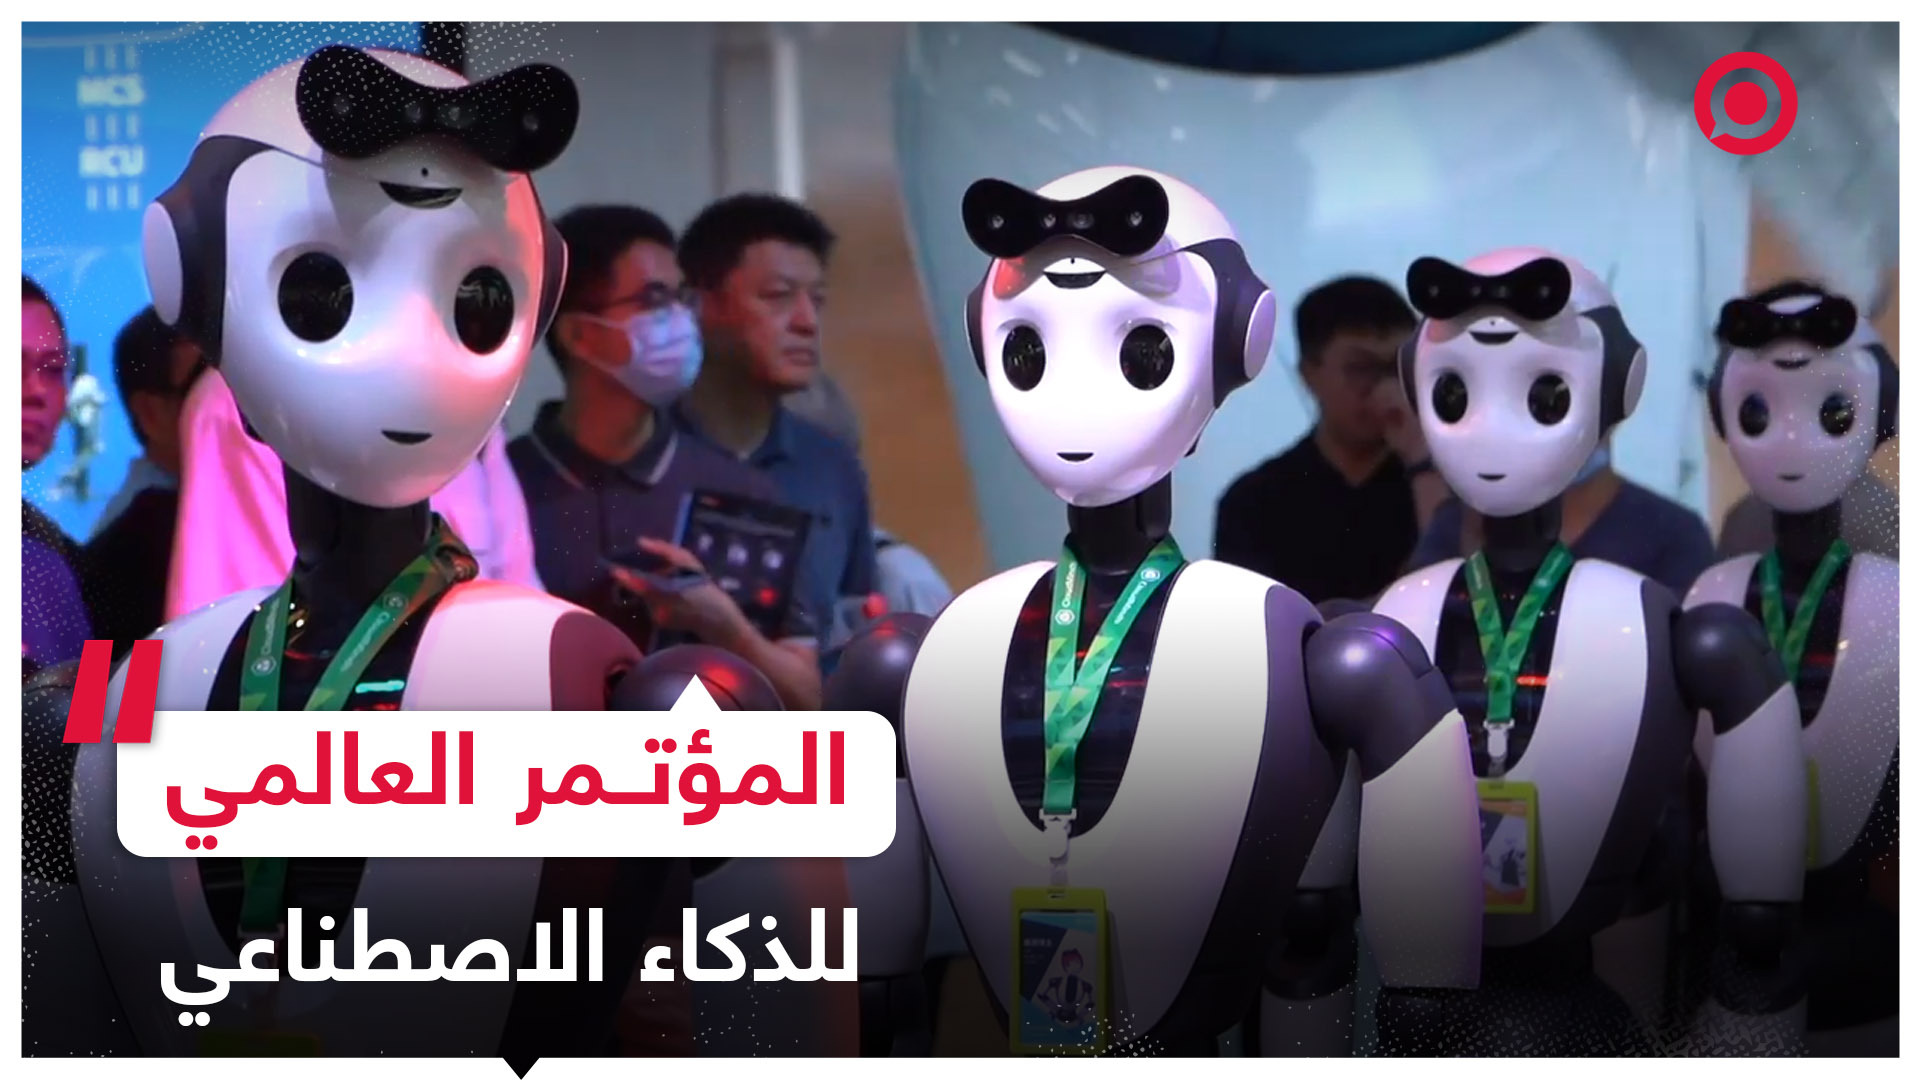 روبوتات تحاكي الإنسان والحيوان في المؤتمر العالمي للذكاء الاصطناعي